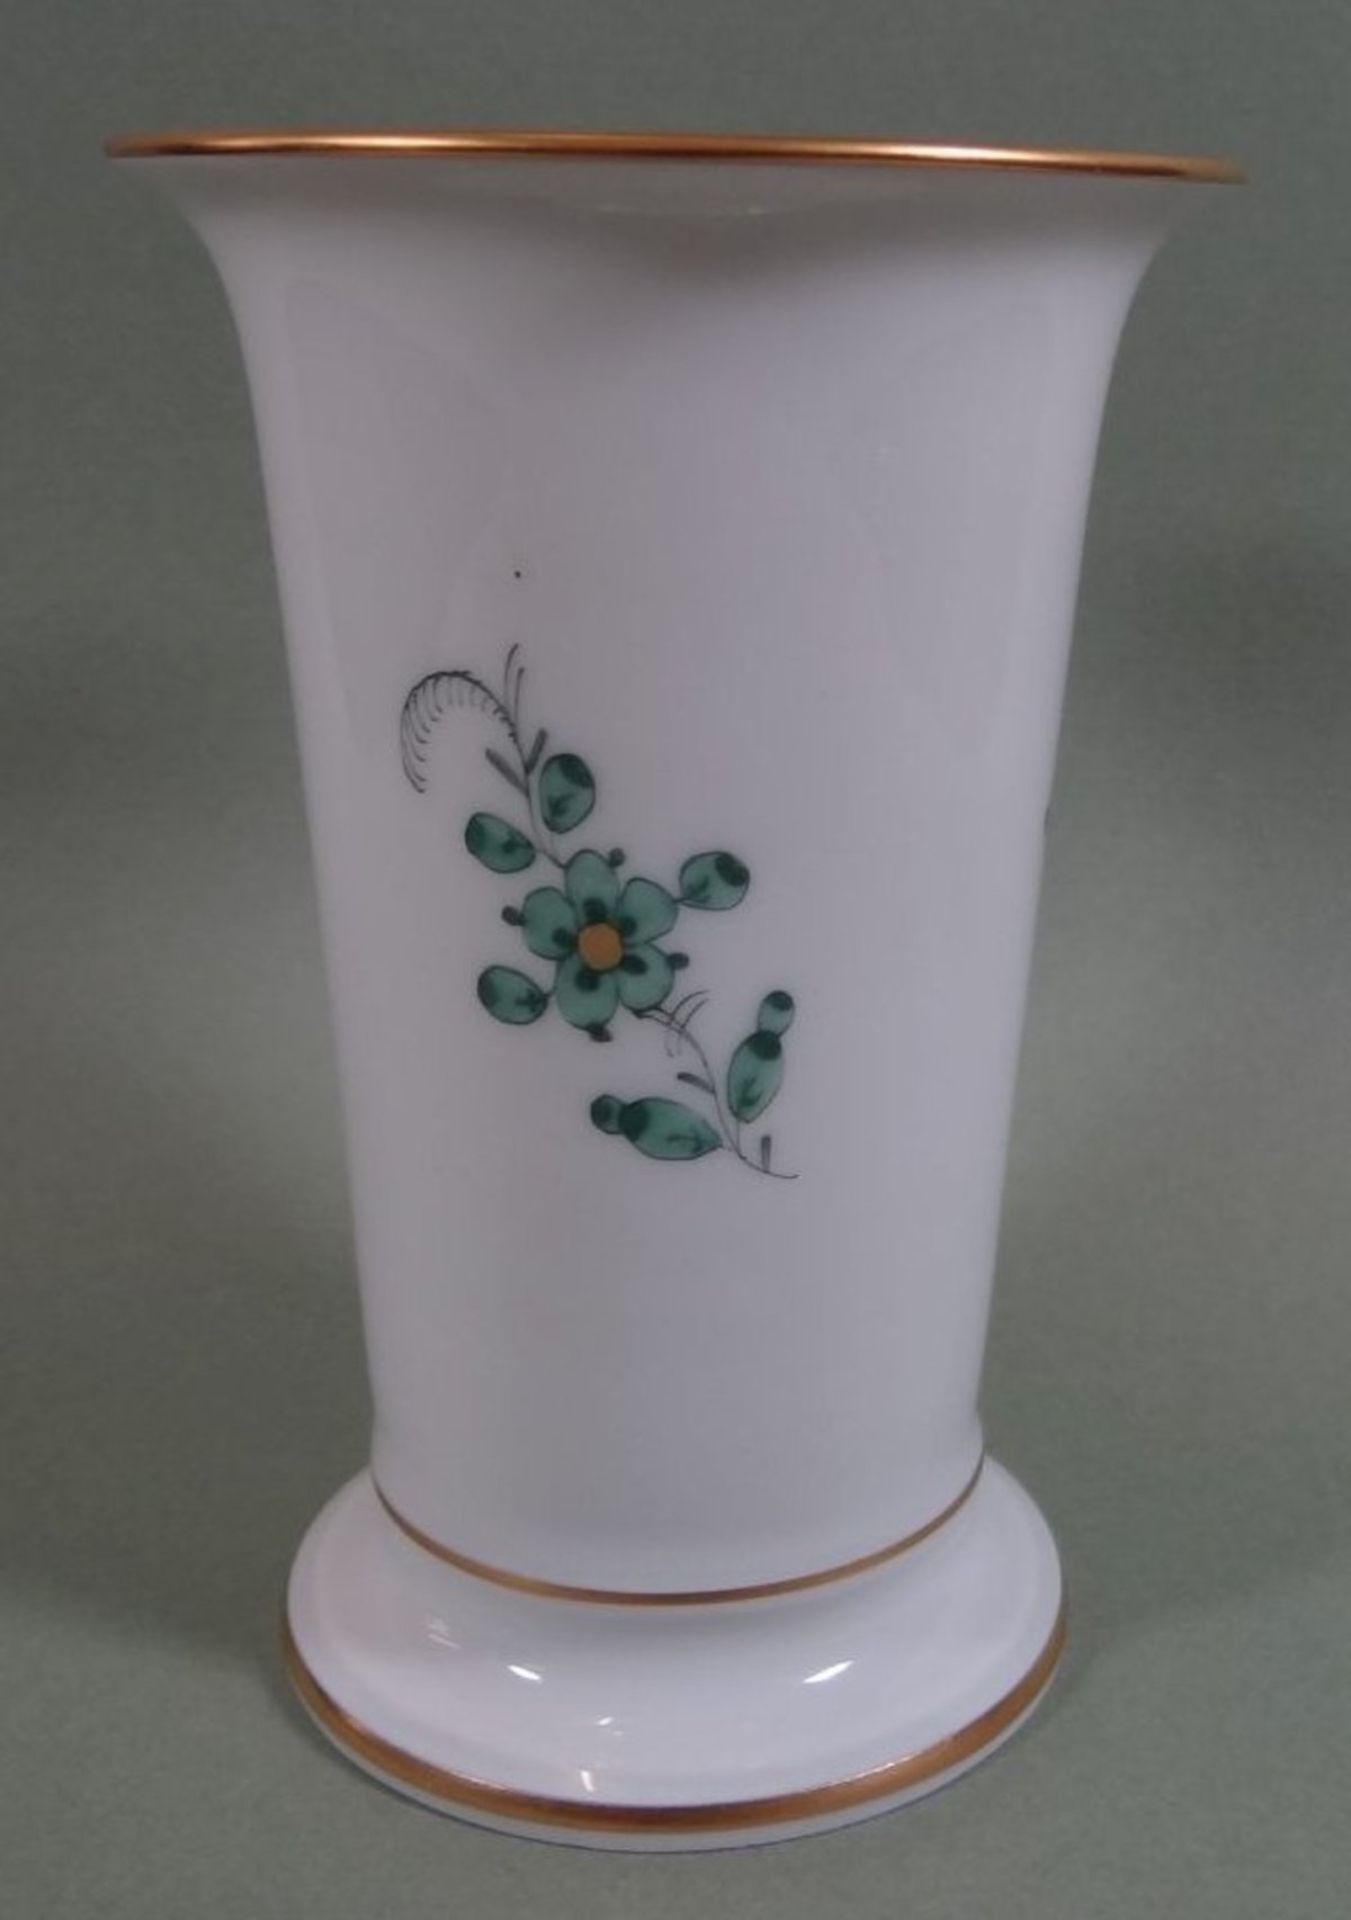 kl. Vase "Meissen" indianische grüne Blumen, H-10 cm - Bild 2 aus 5